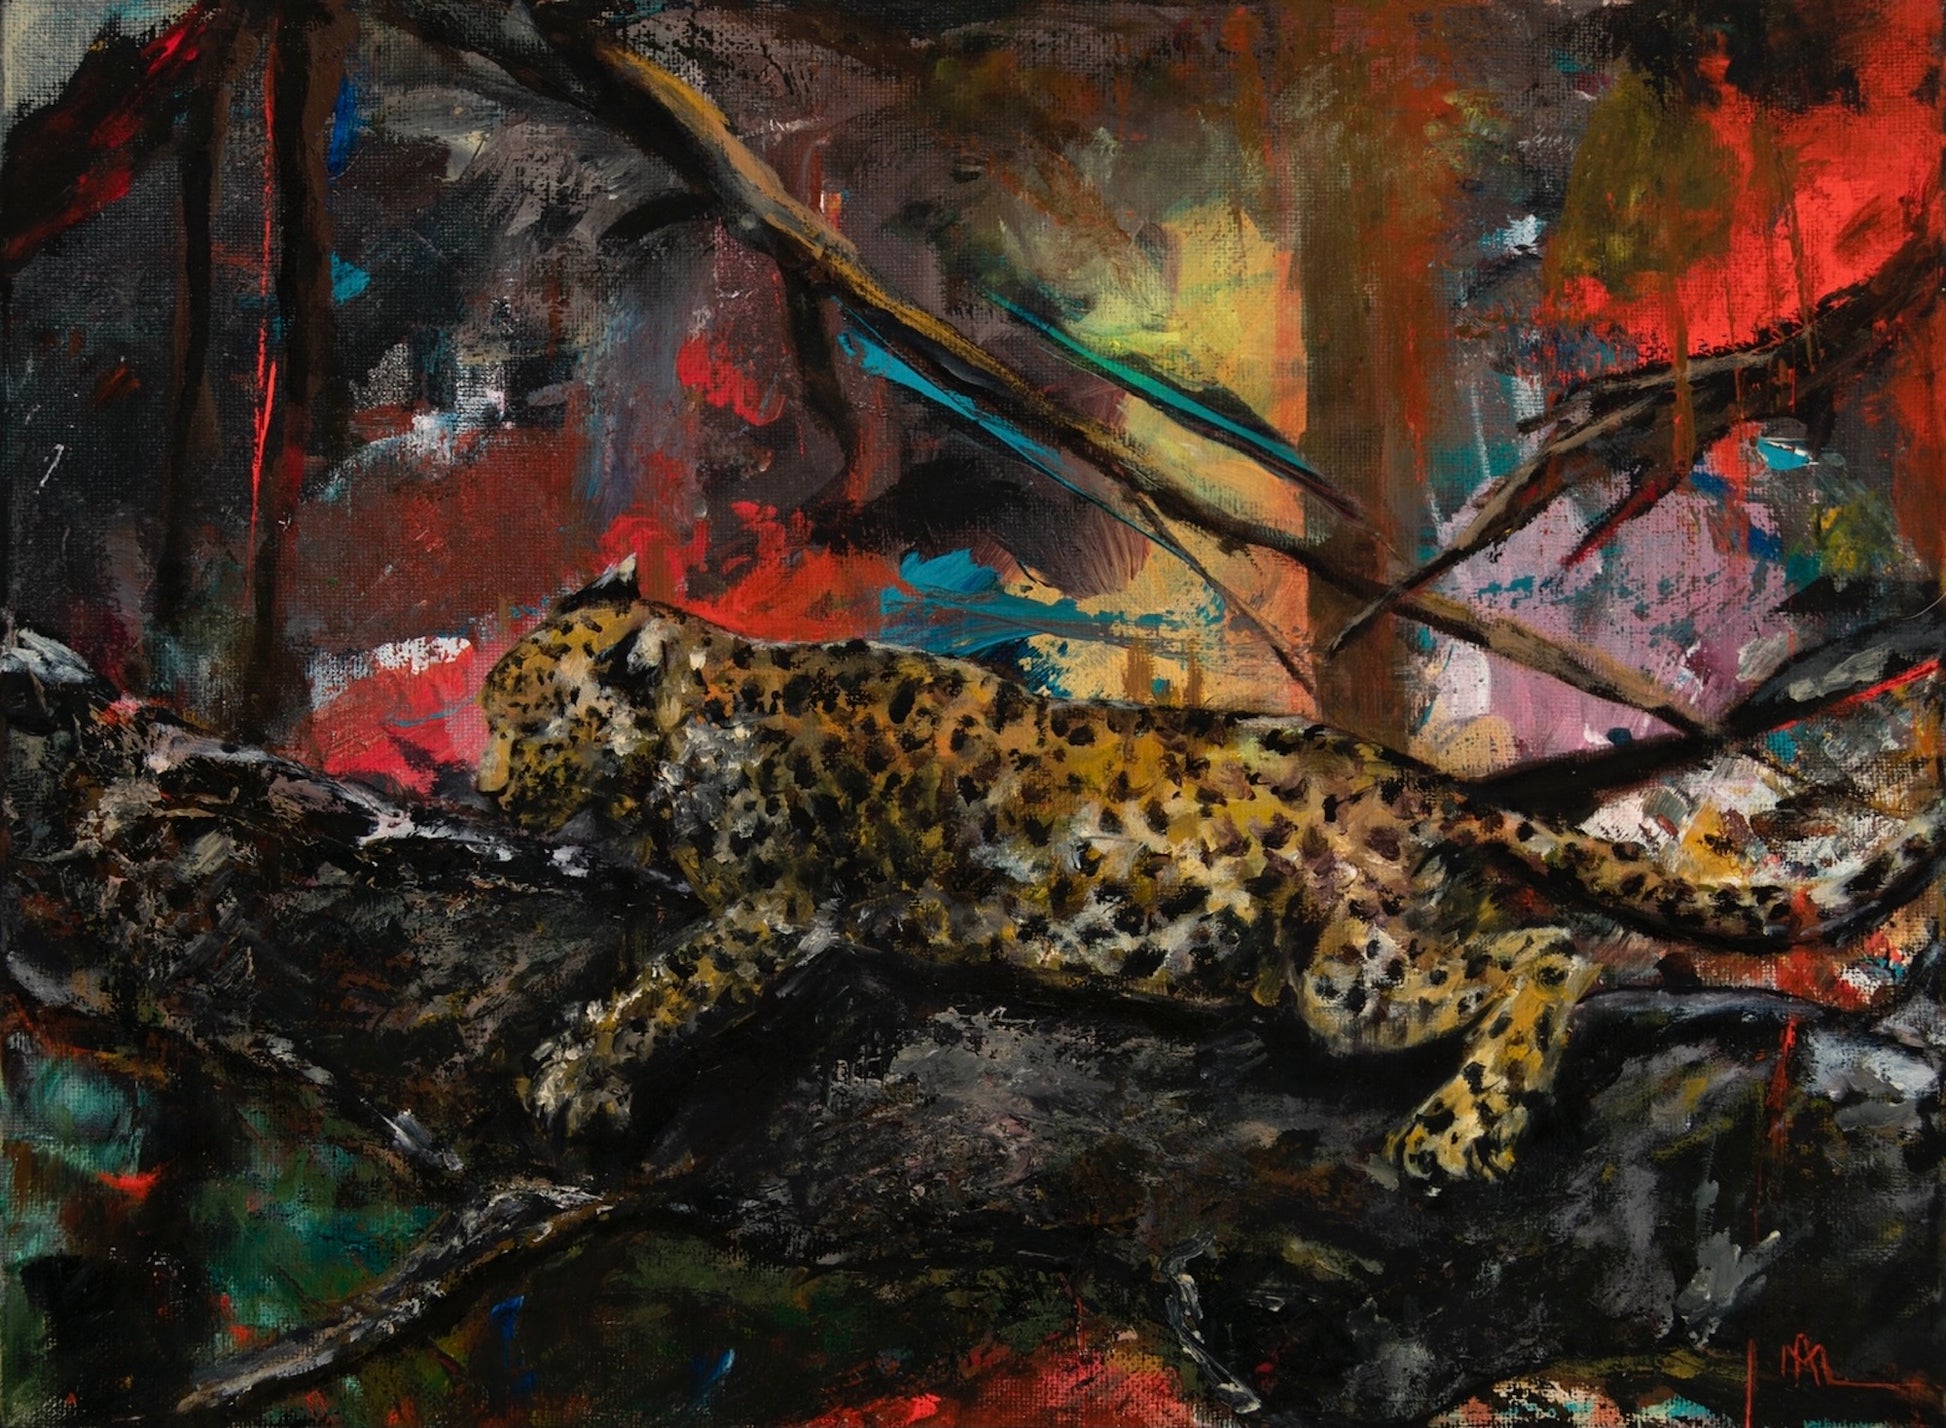 Leopard, 4 x 6 postcard